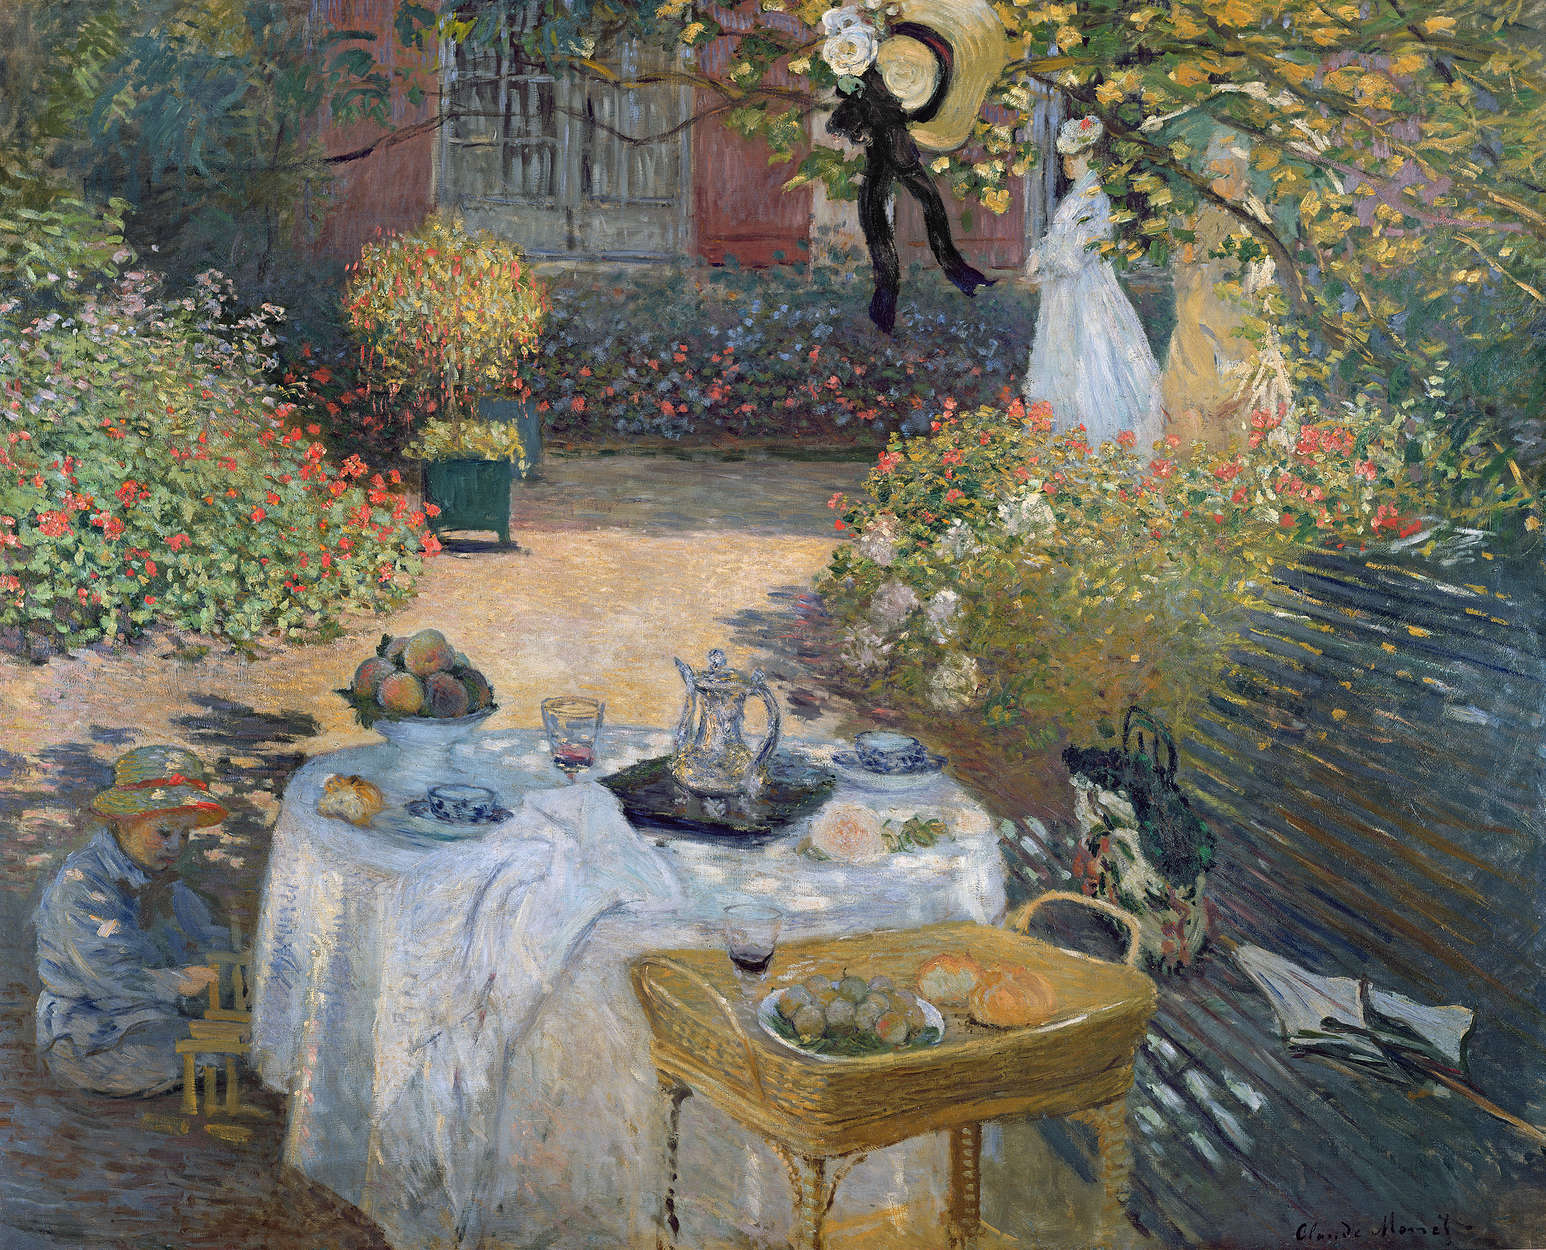             Fototapete "Das Mittagsmahl: Monets Garten in Argenteuil" von Claude Monet
        